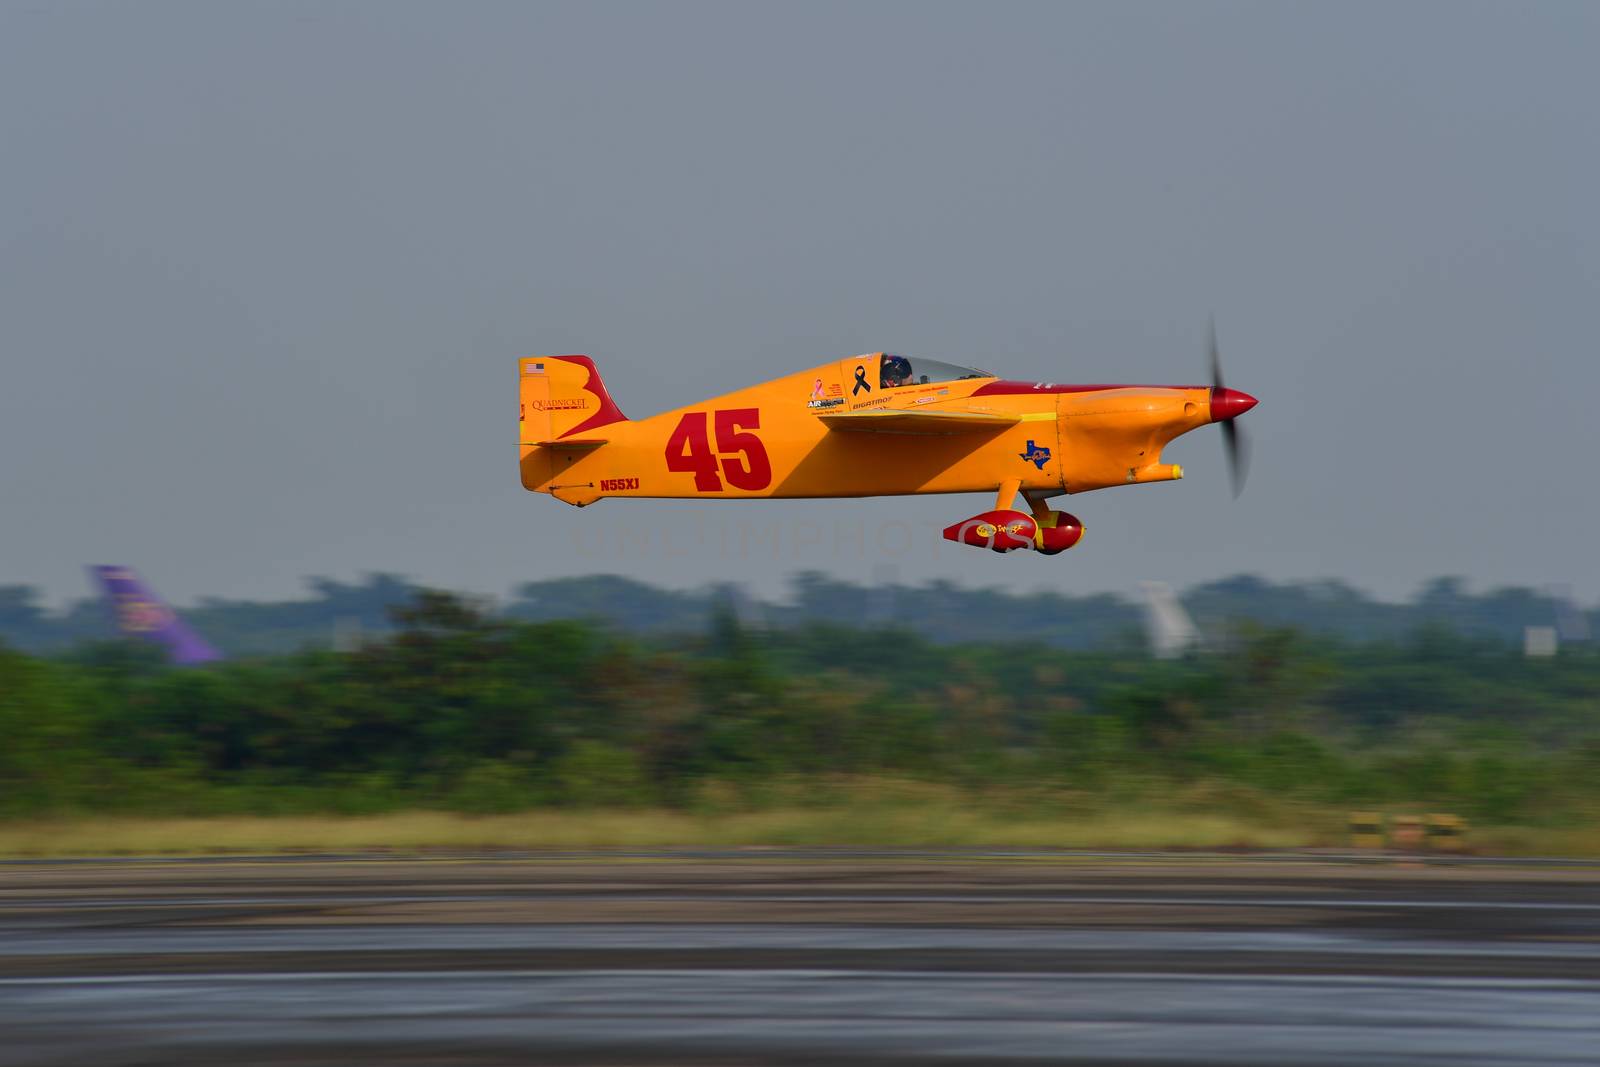 Air Race 1 Thailand by chatchai